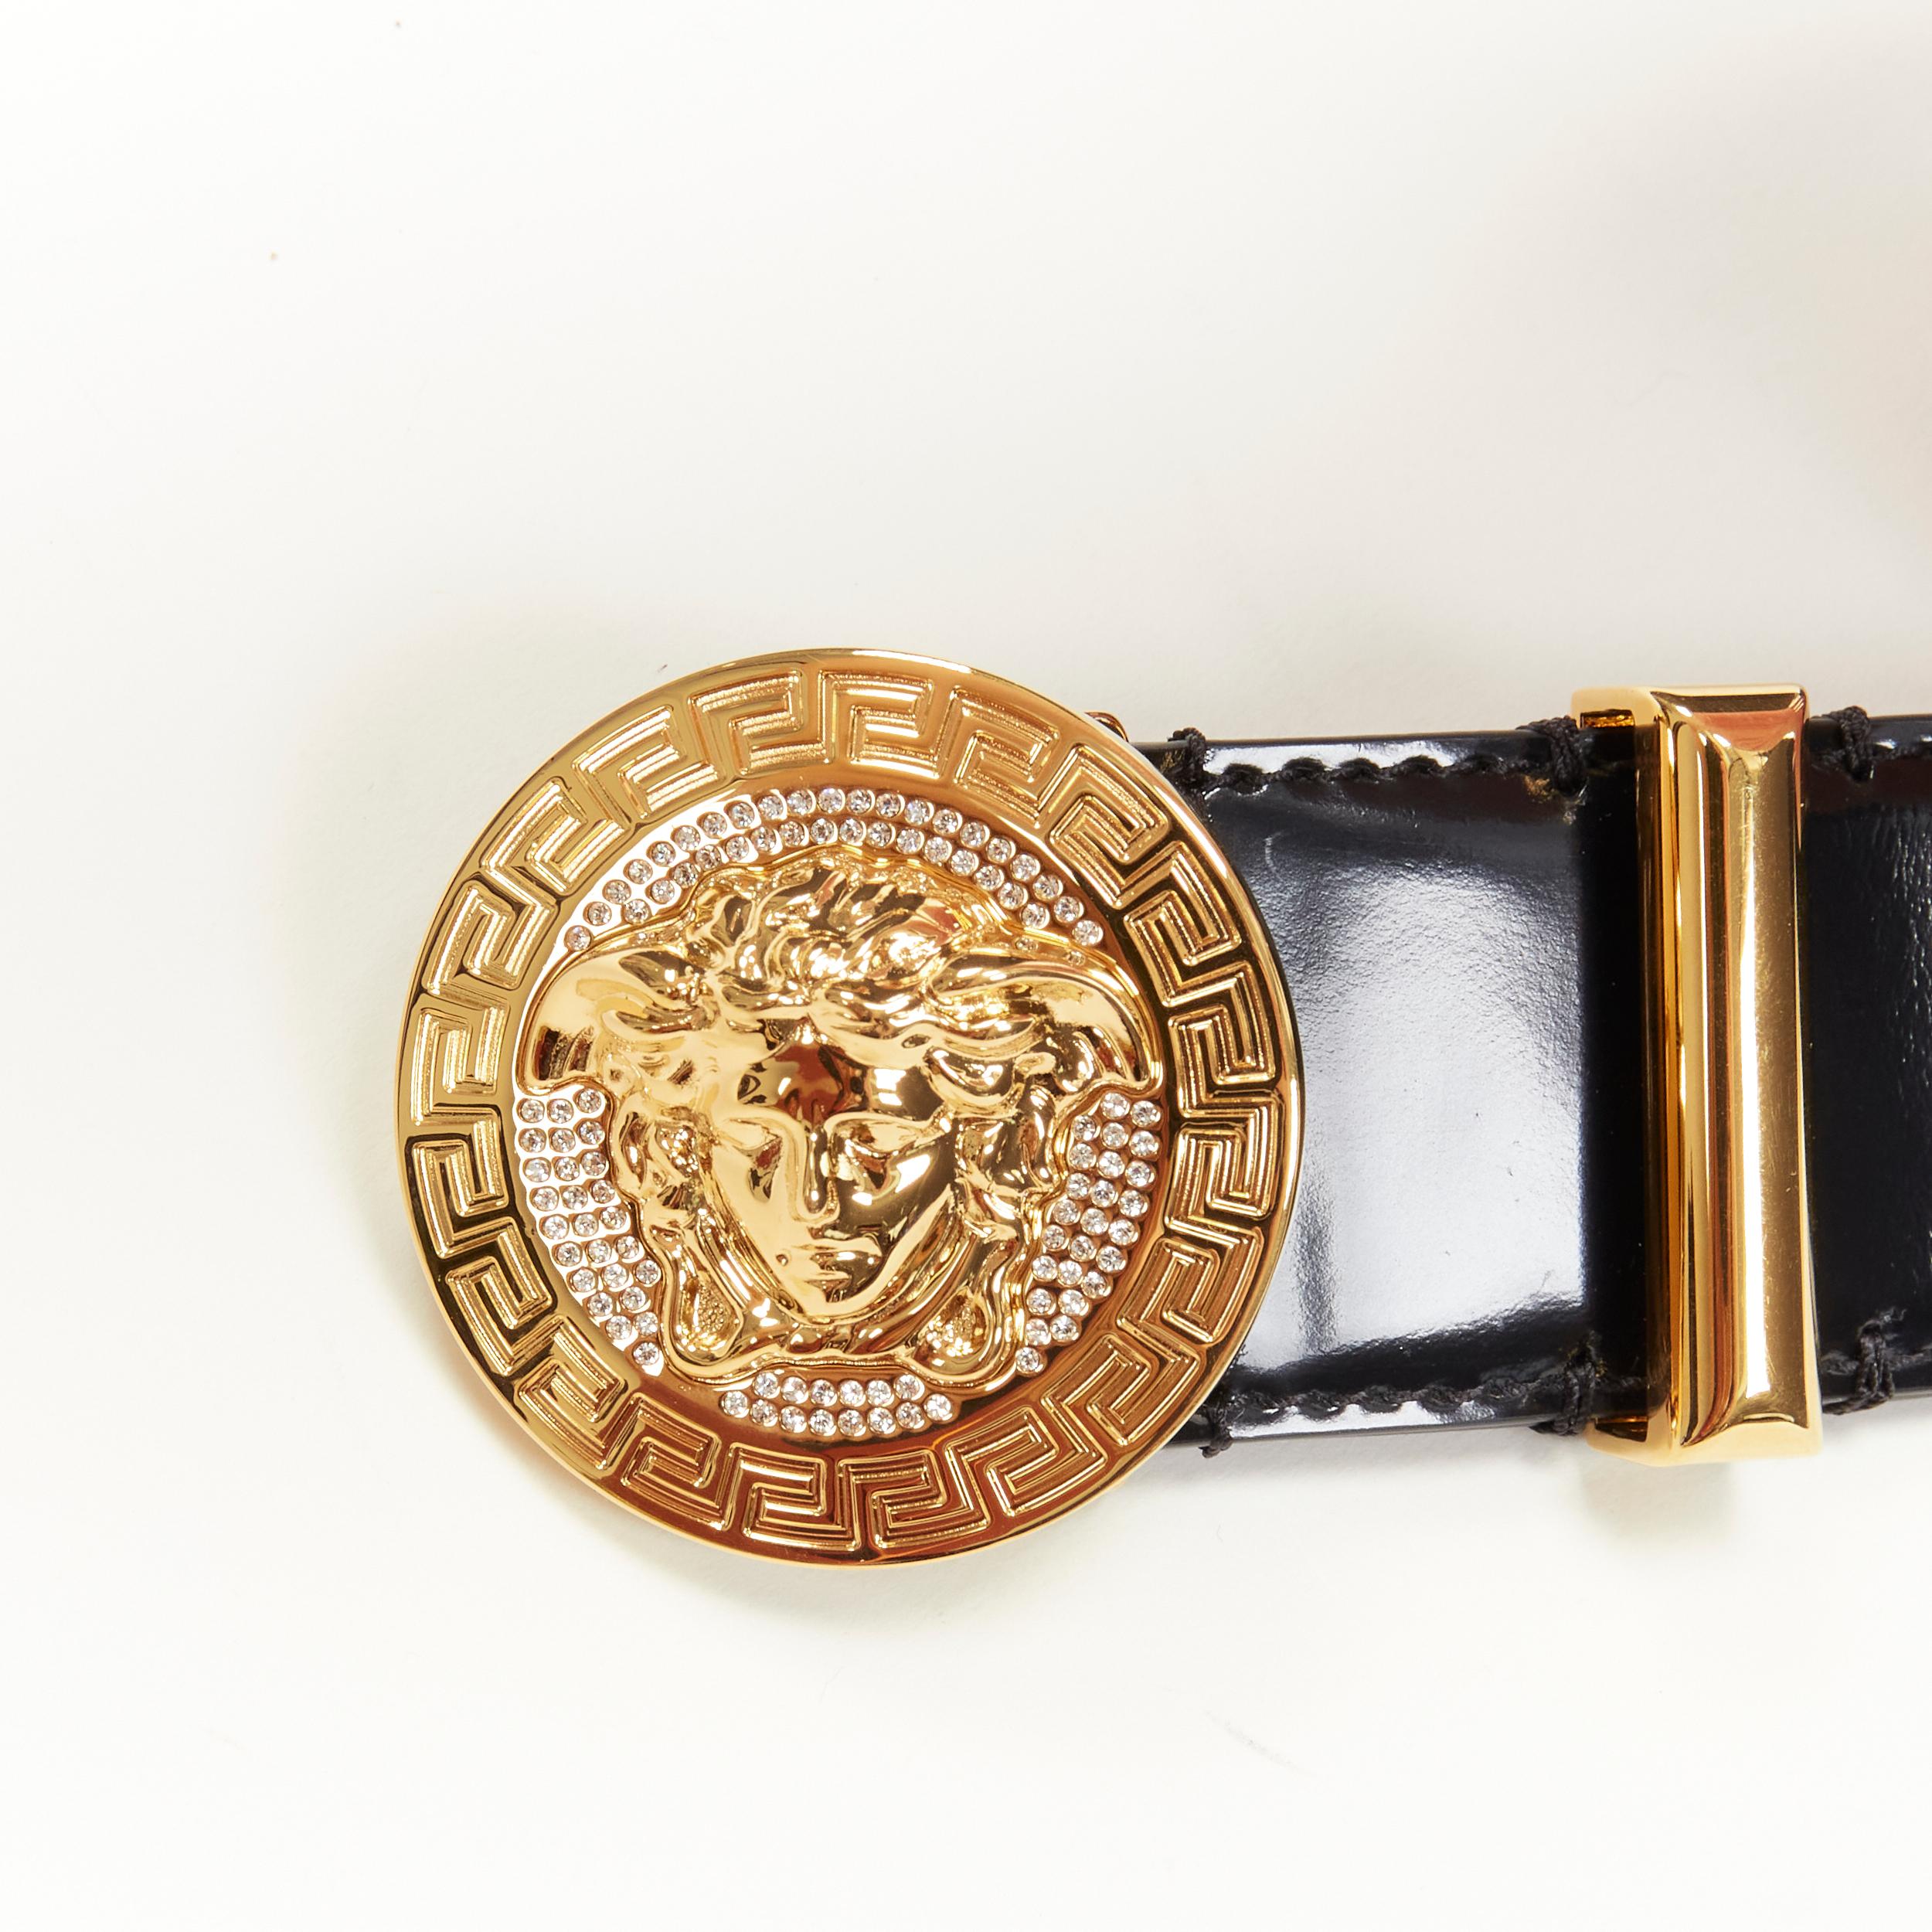 Black new VERSACE Medusa crystal gold Medallion coin black leather belt 80cm 30-34